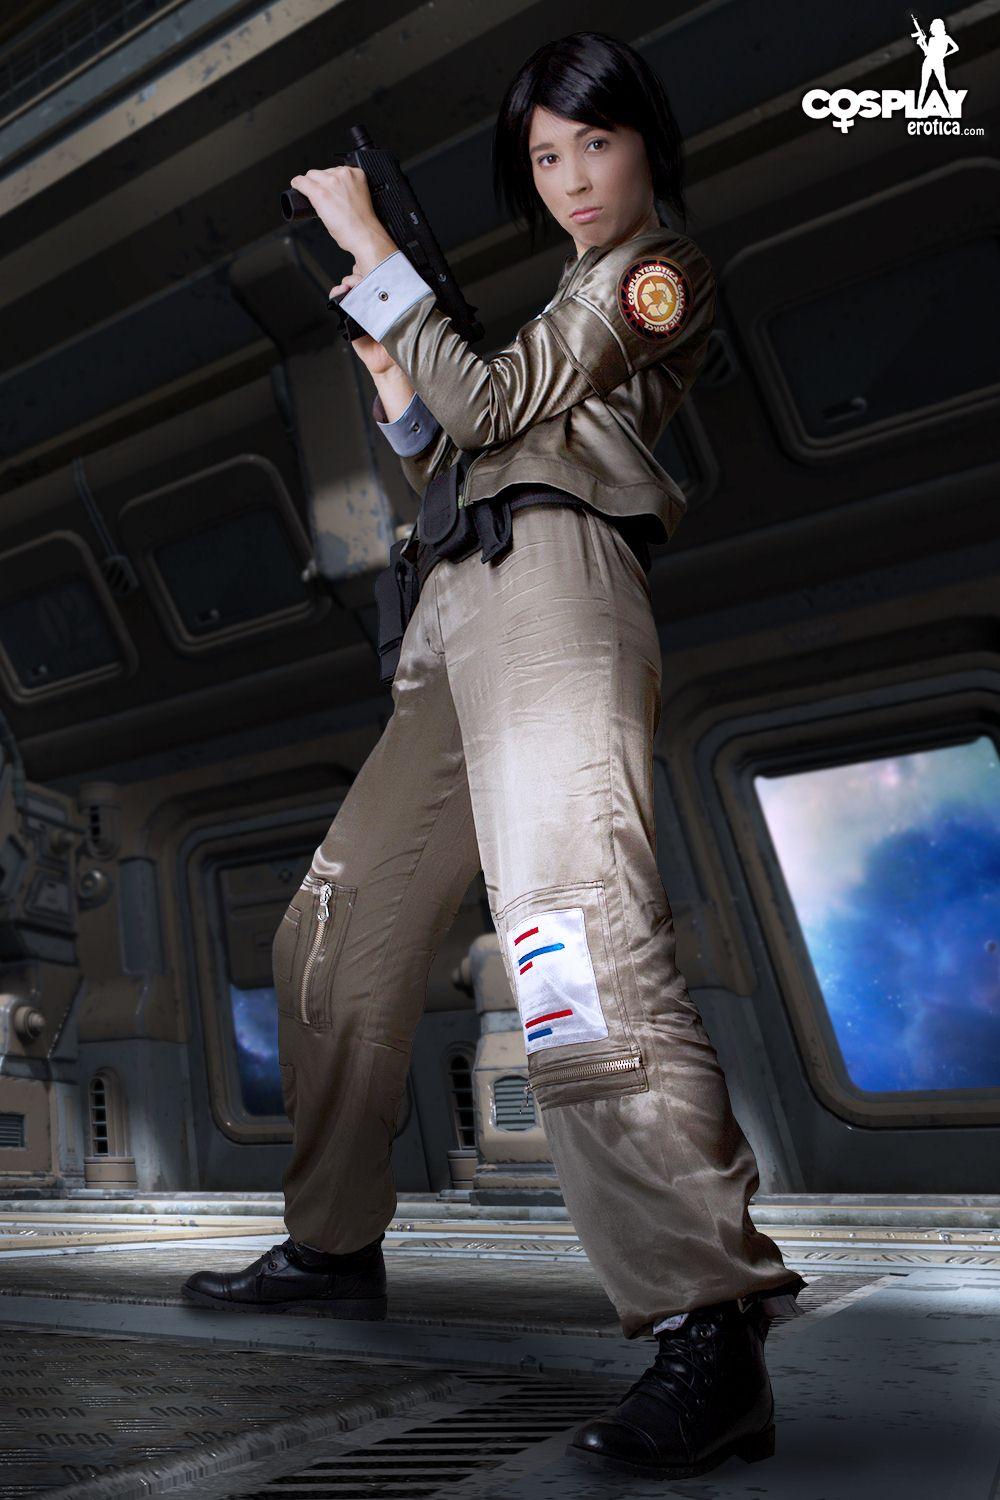 Bilder von heißen Cosplayer Stacy gekleidet für den Dienst auf Battlestar Galactica
 #60298251